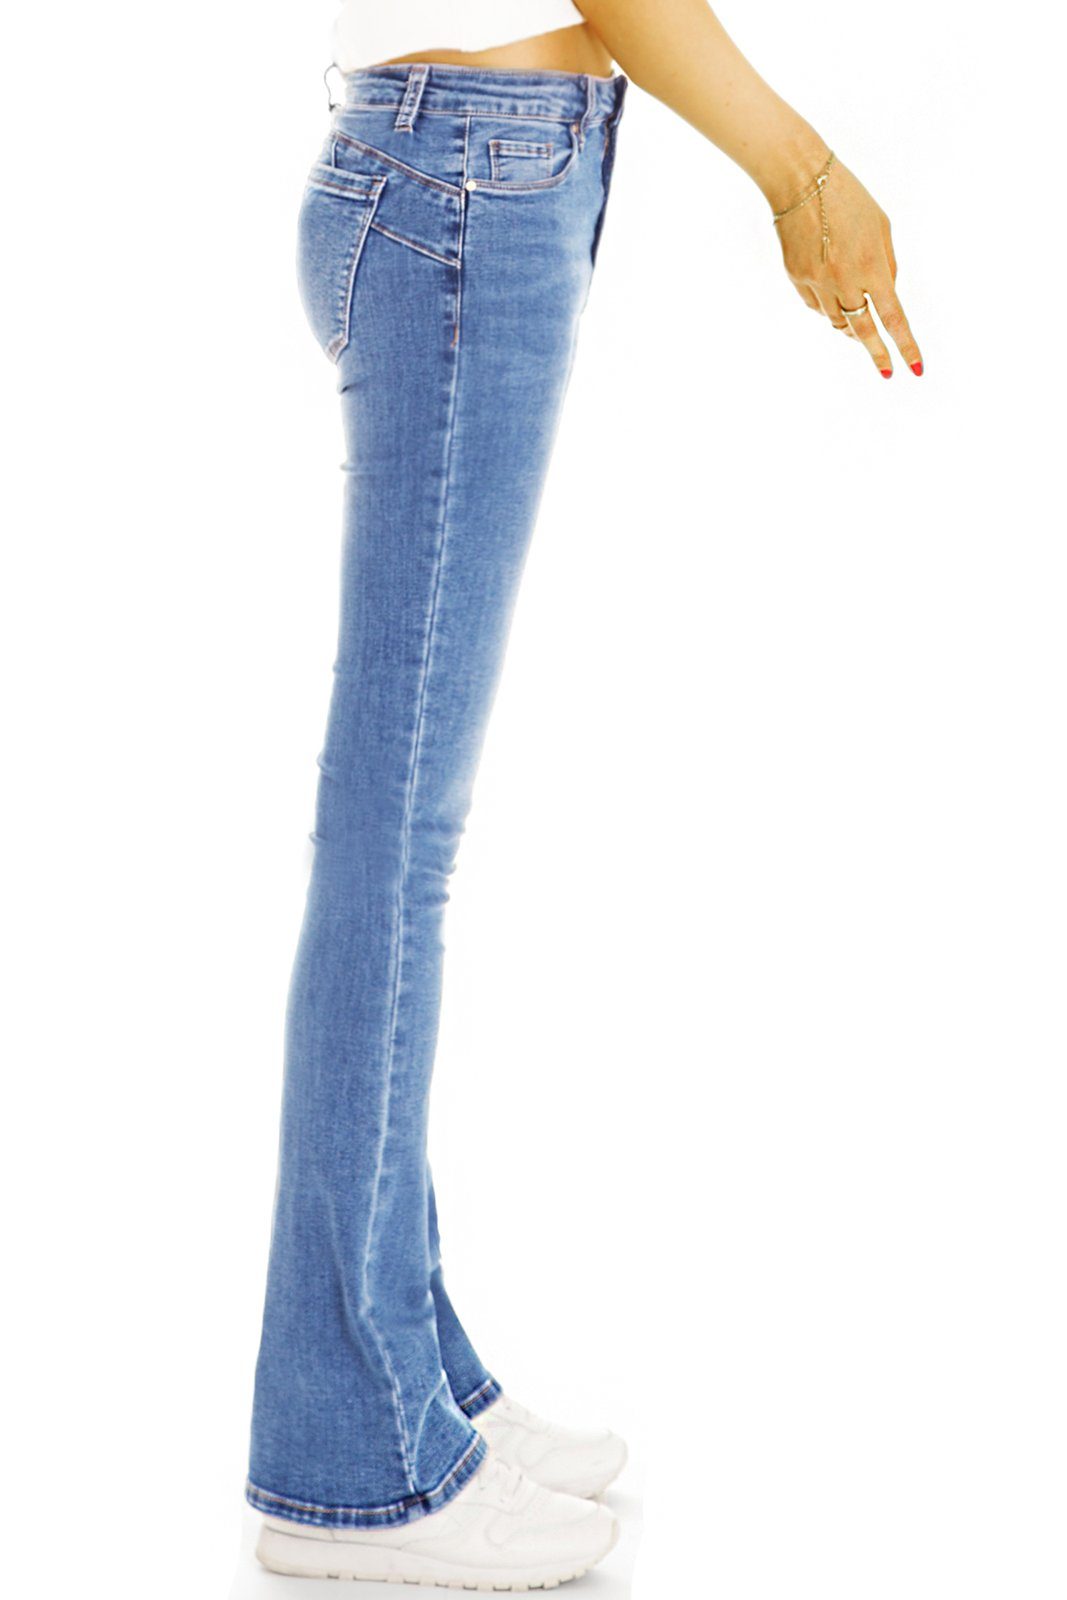 Bootcut-Jeans dunkelblau - 5-Pocket-Style Hosen Denim Waist mit be bequeme Stretch-Anteil, - styled Medium Bootcut Jeans Damen j44p Stretch